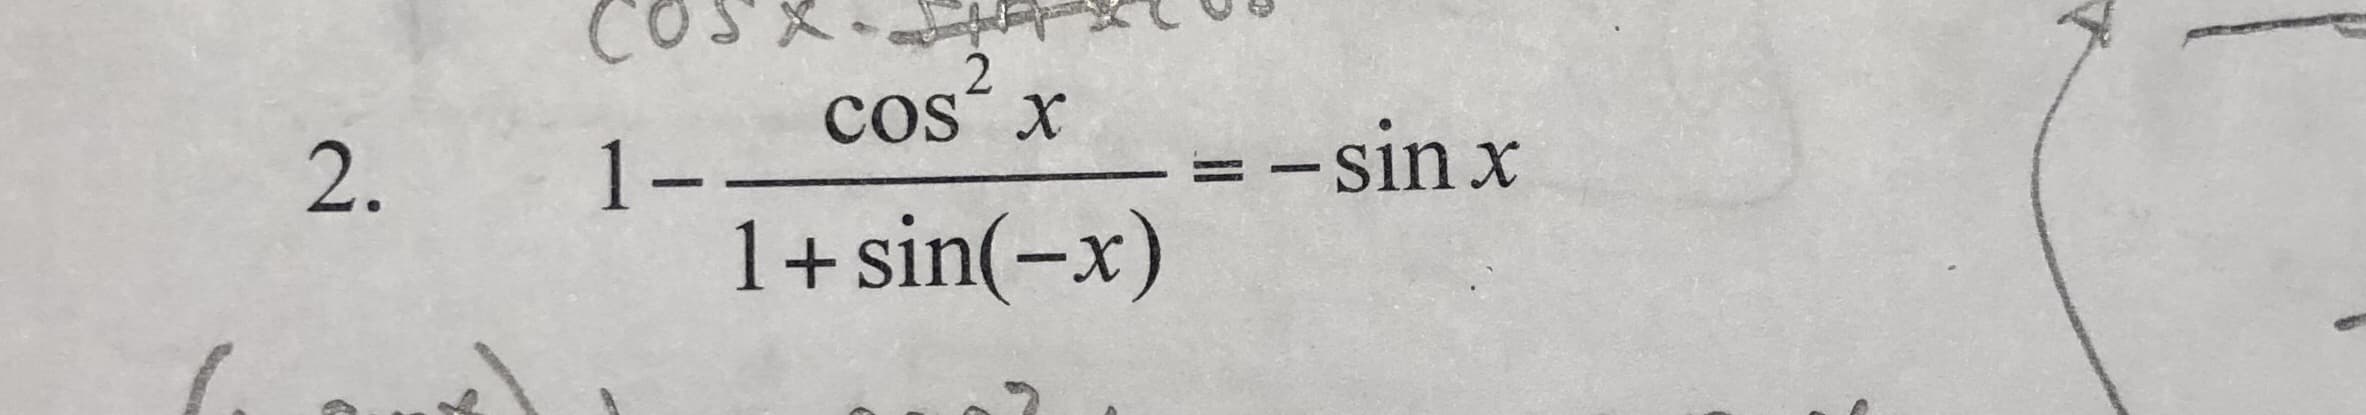 cos“ x
=-sin x
1--
1+sin(-x)
2.
